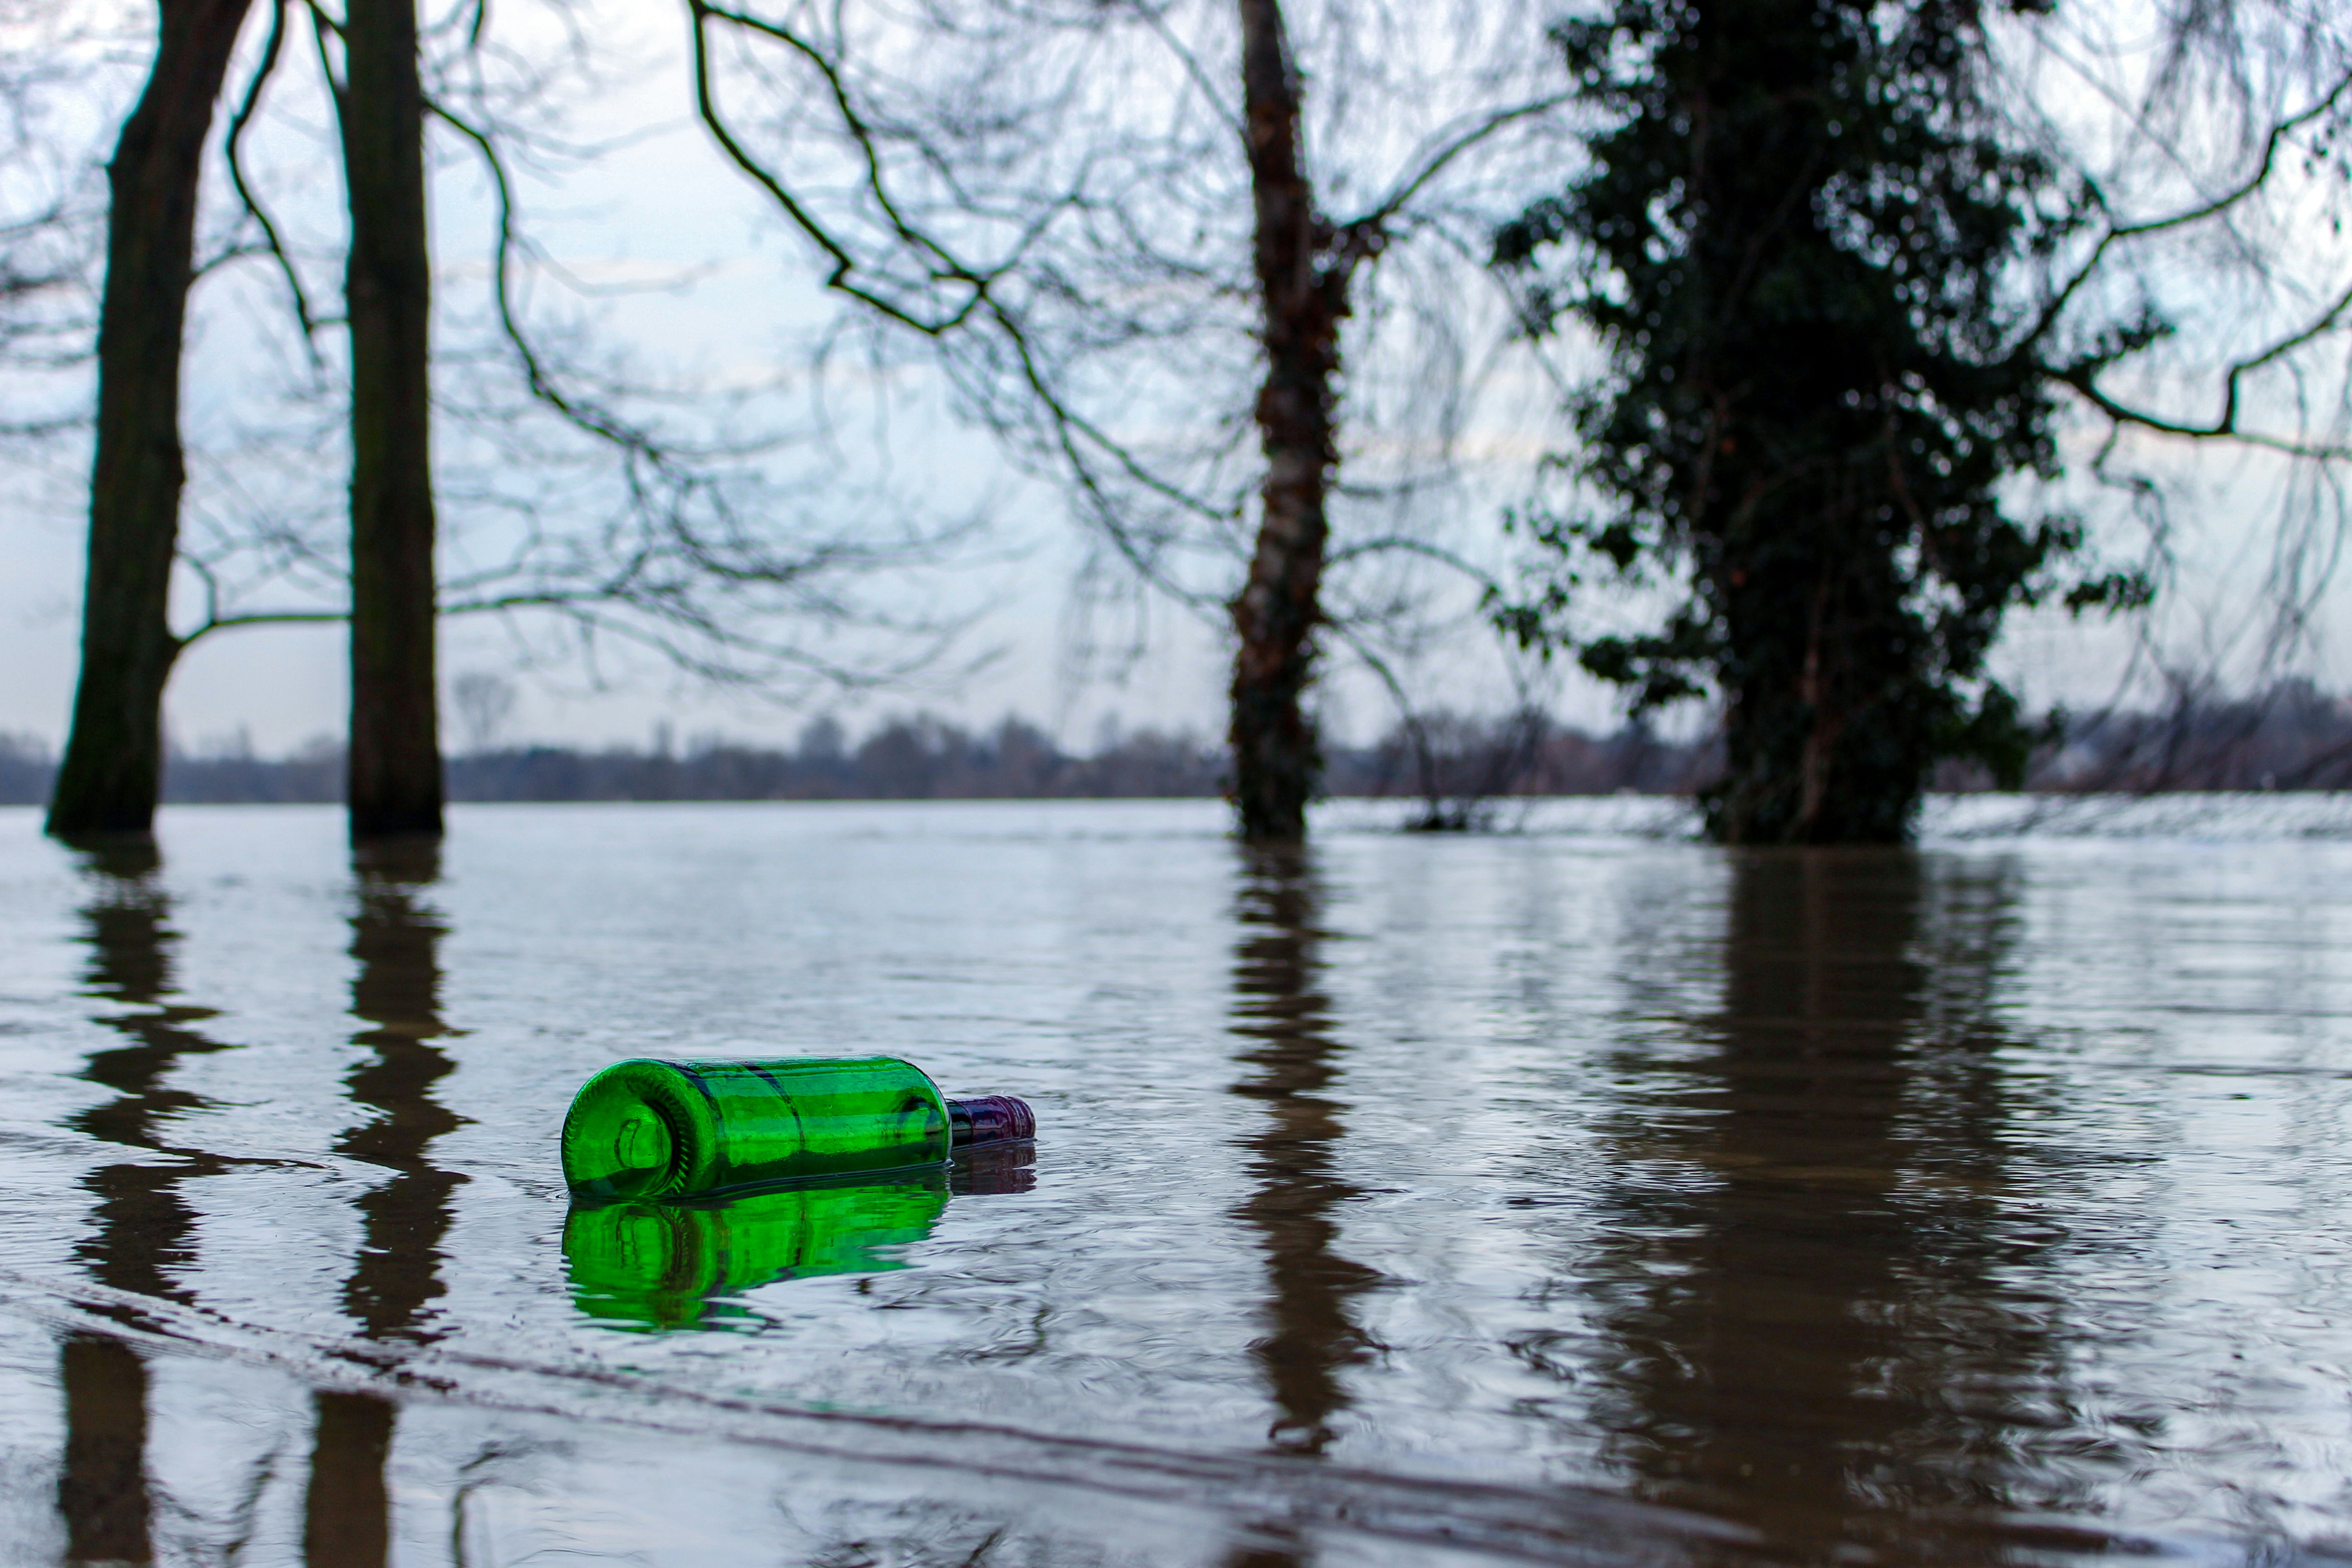 empty green bottle floats on calm water